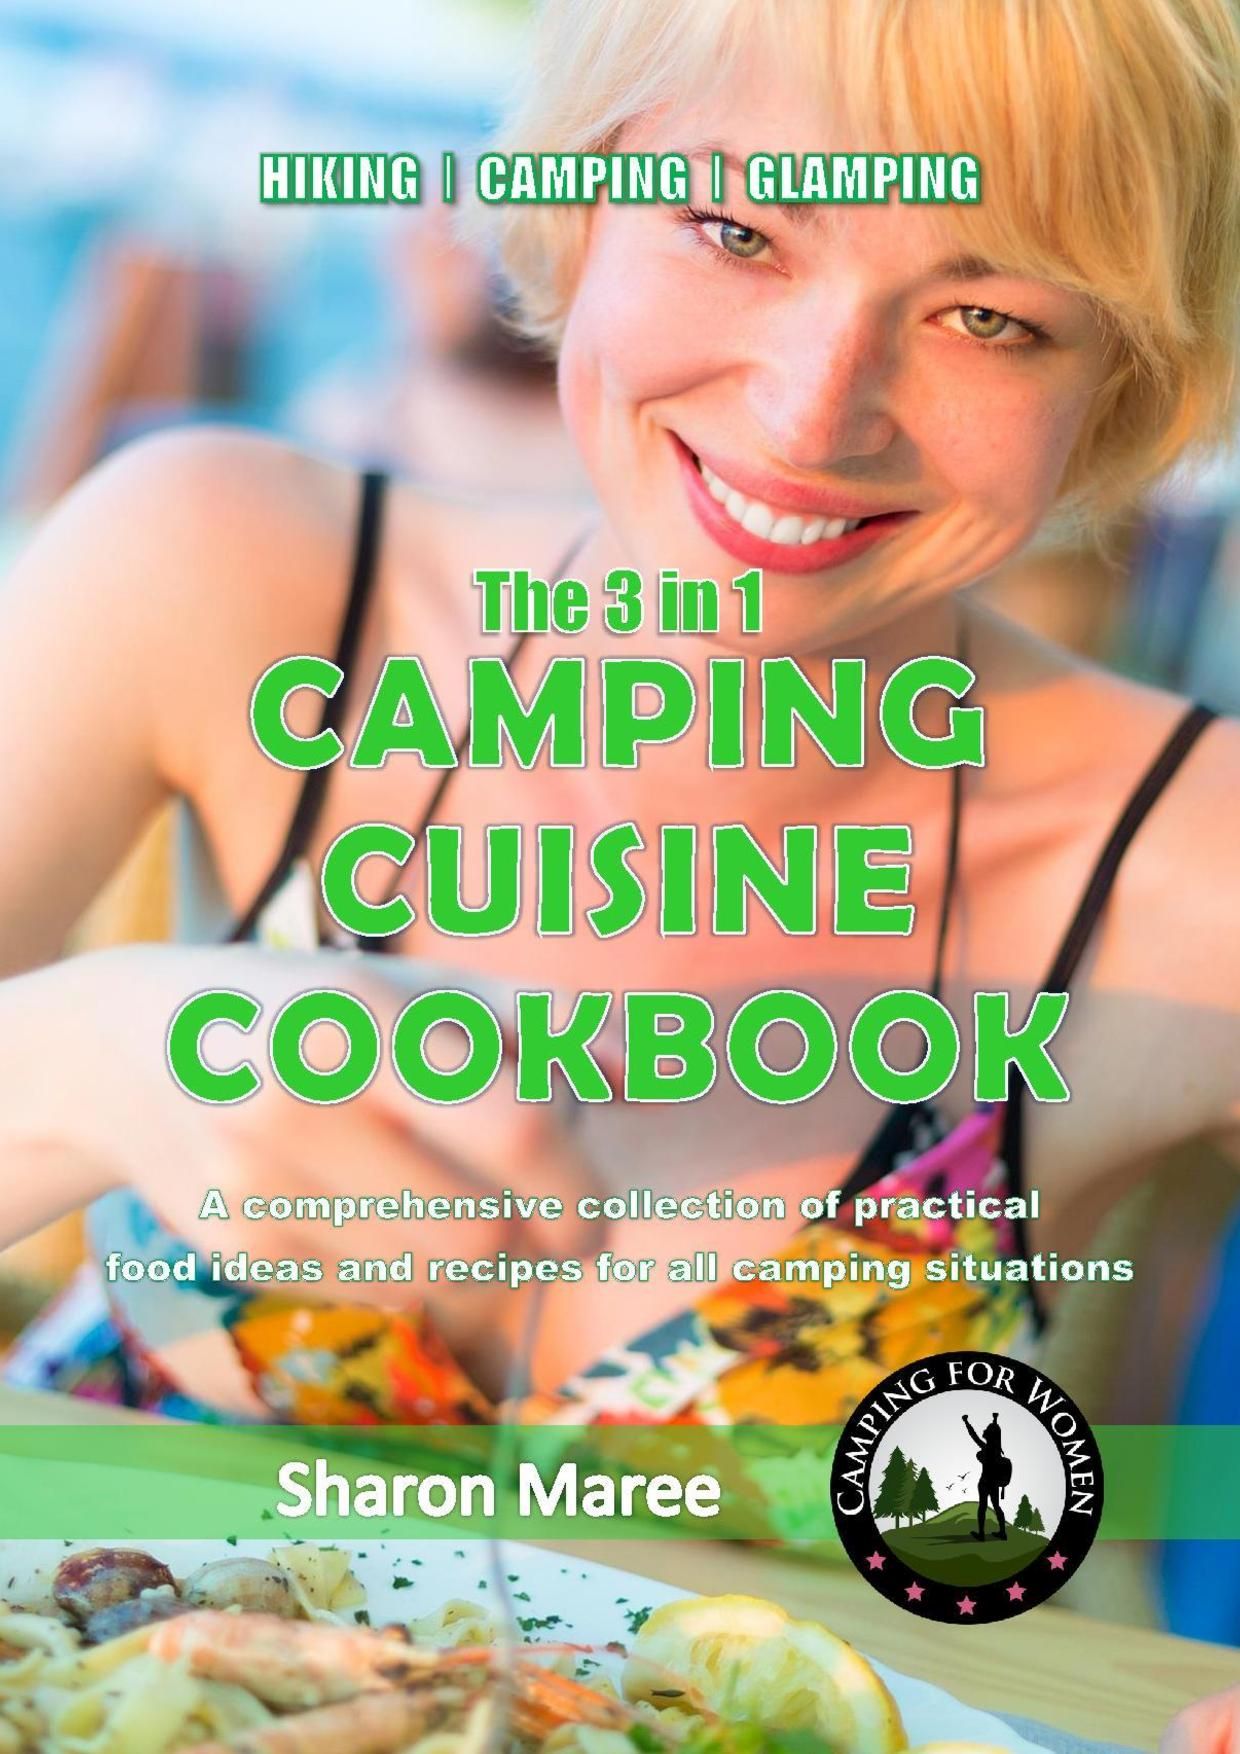 The 3 in 1 Camping Cuisine Cookbook